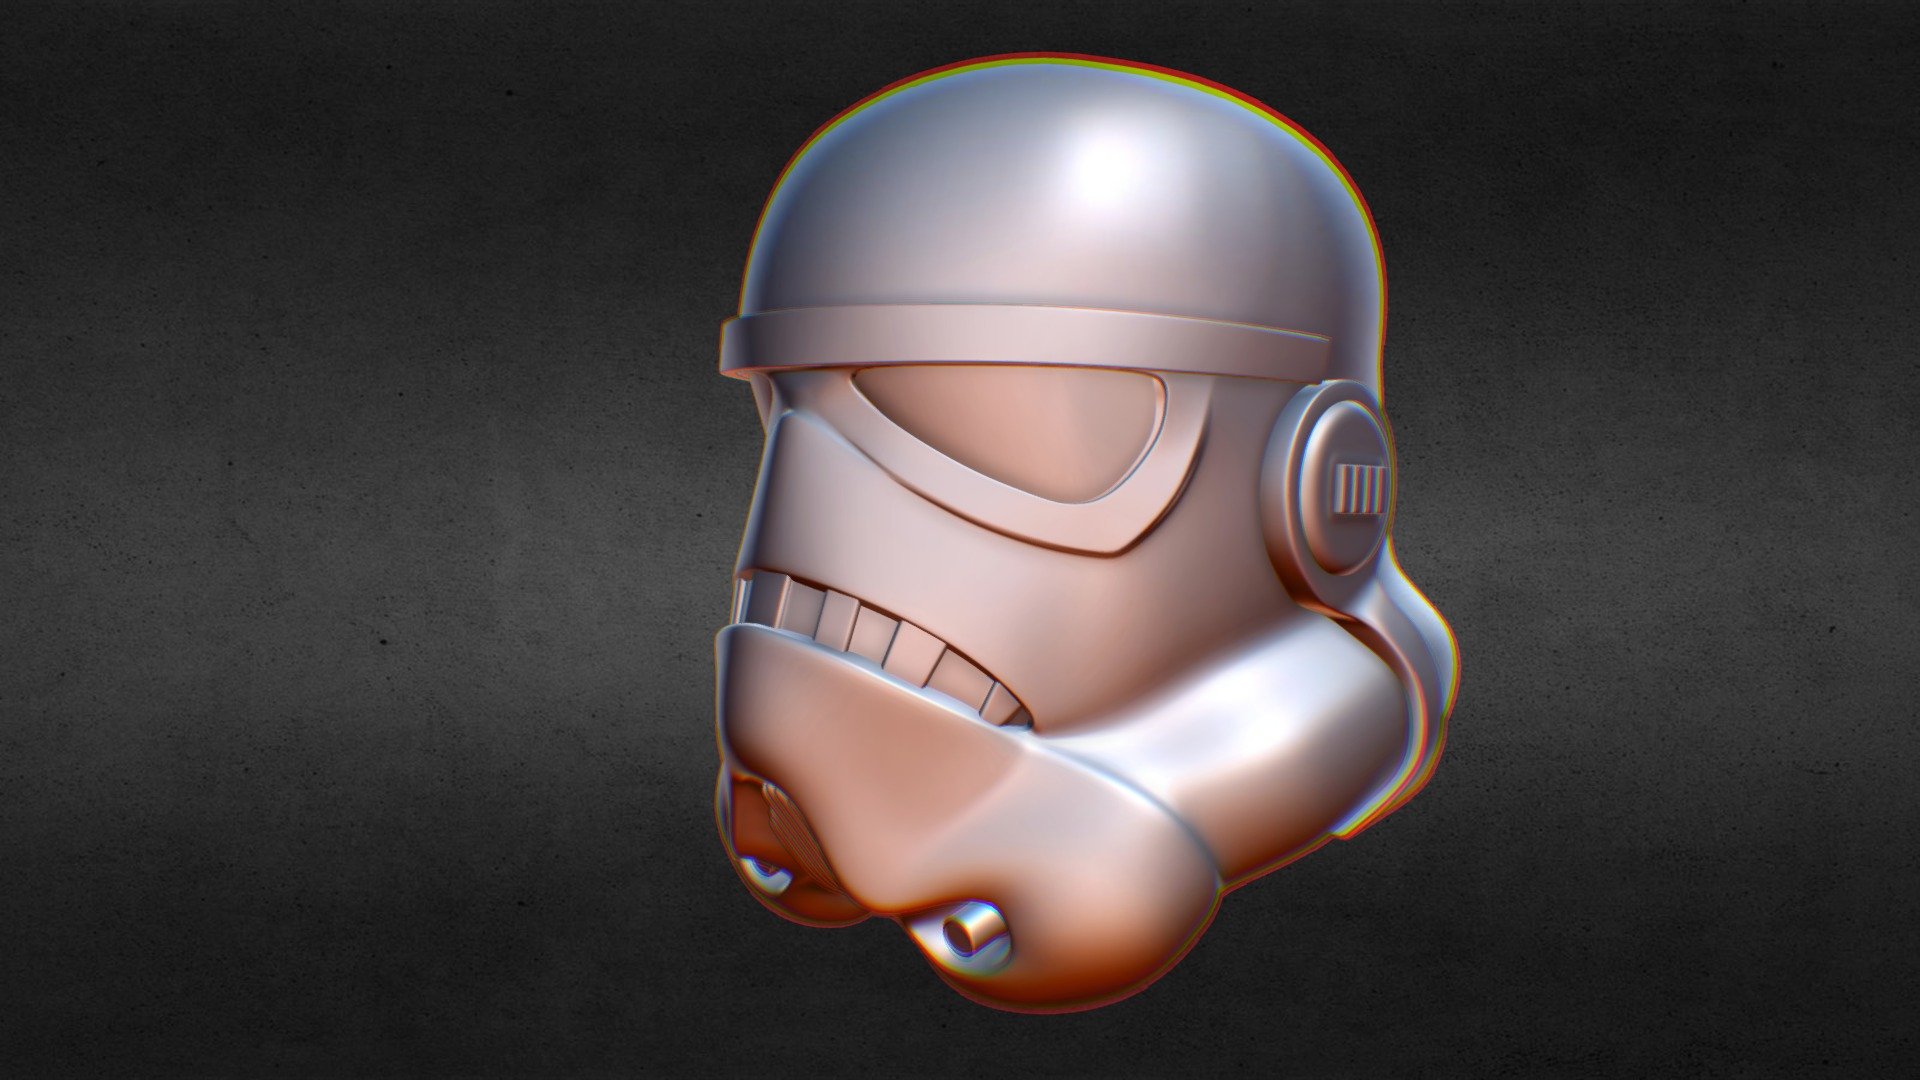 Stormtrooper Helmet Model